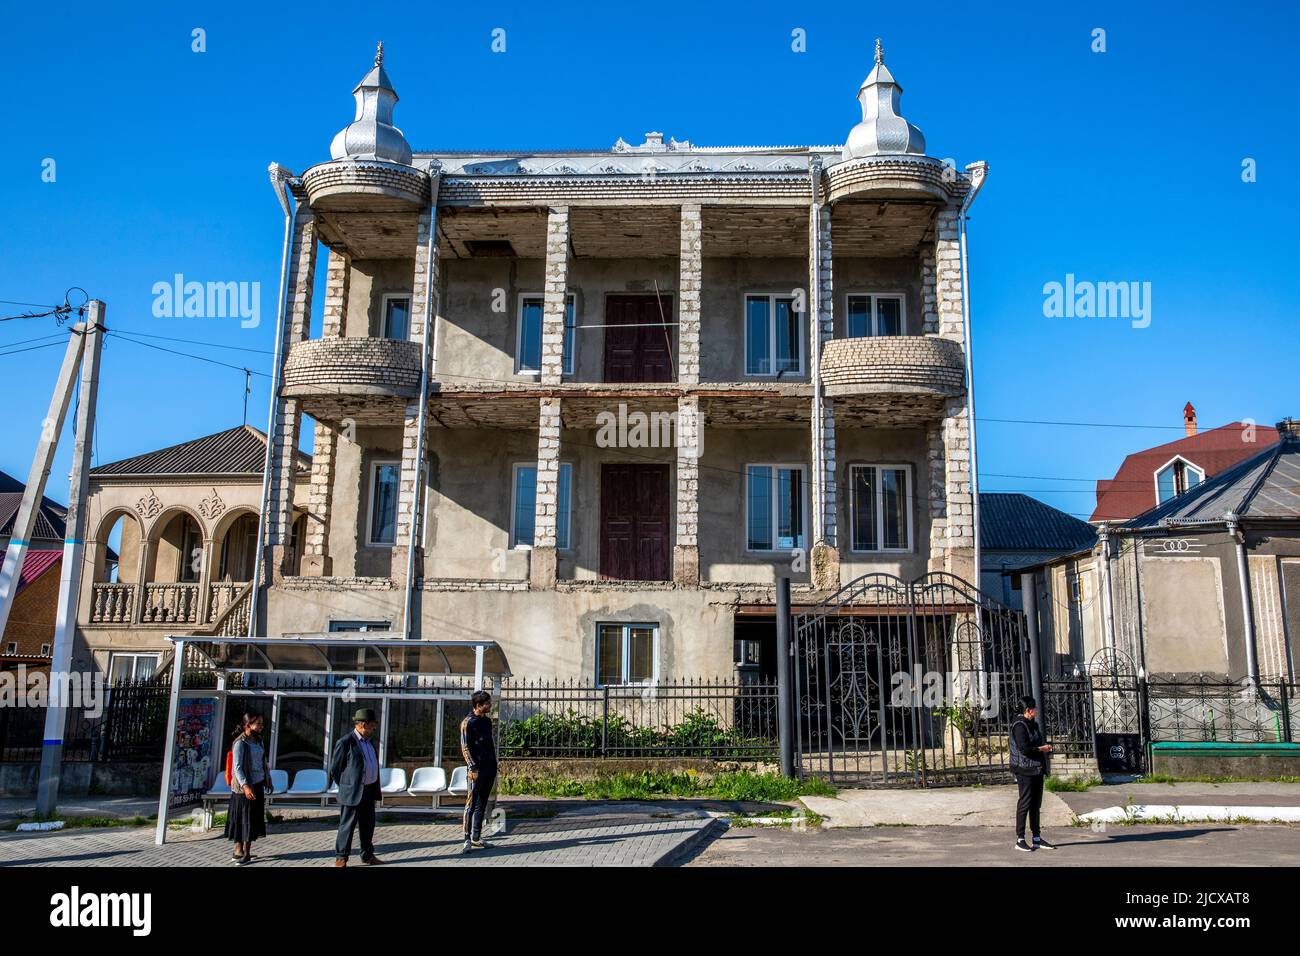 Colline de Gypsy, Soroca, Moldova, Europe Banque D'Images